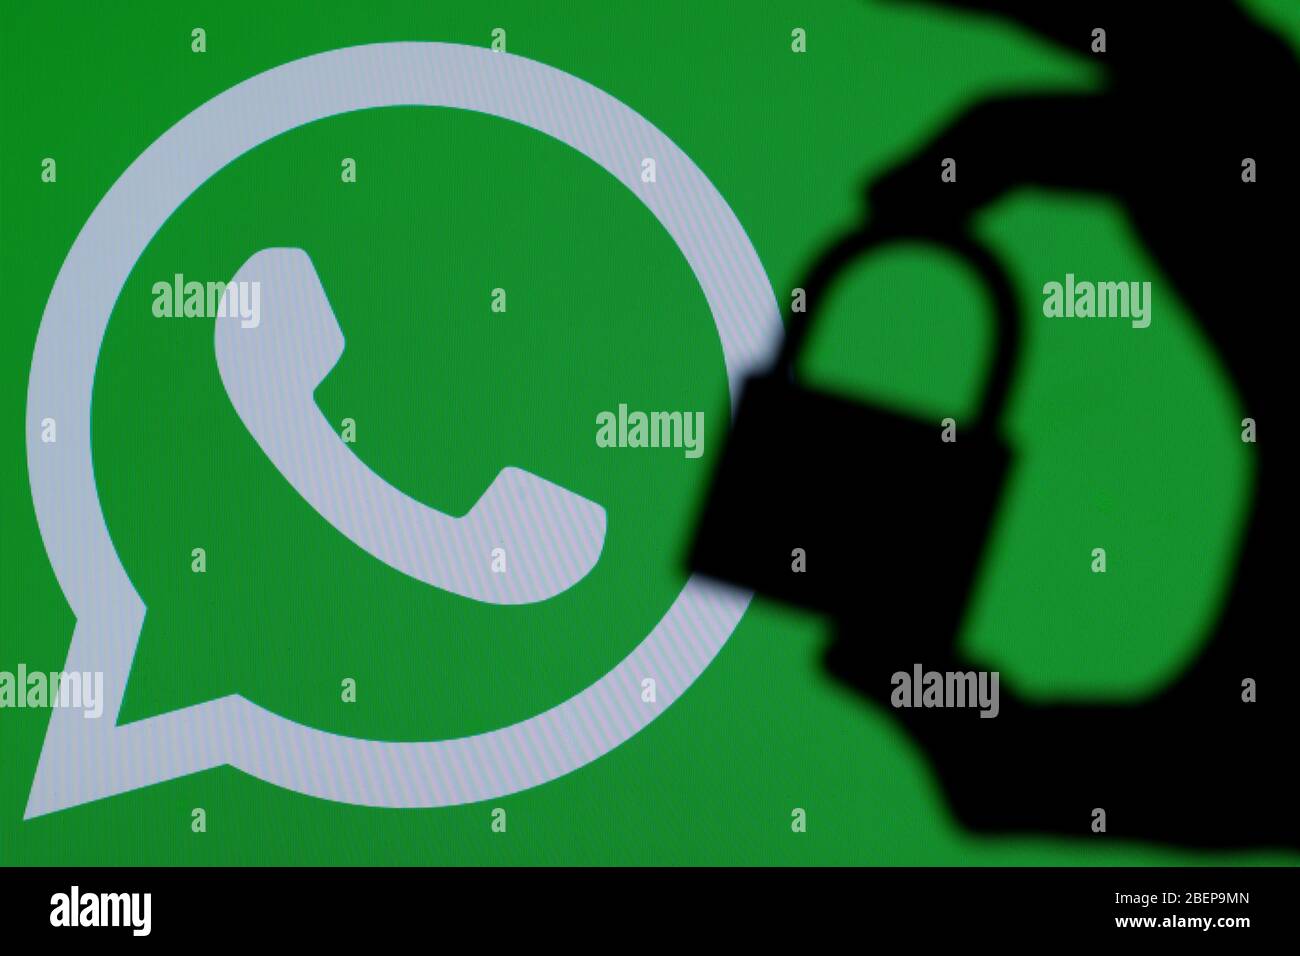 LONDRES, Royaume-Uni - 29 MARS 2017 : icône WhatsApp avec silhouette de cadenas Banque D'Images